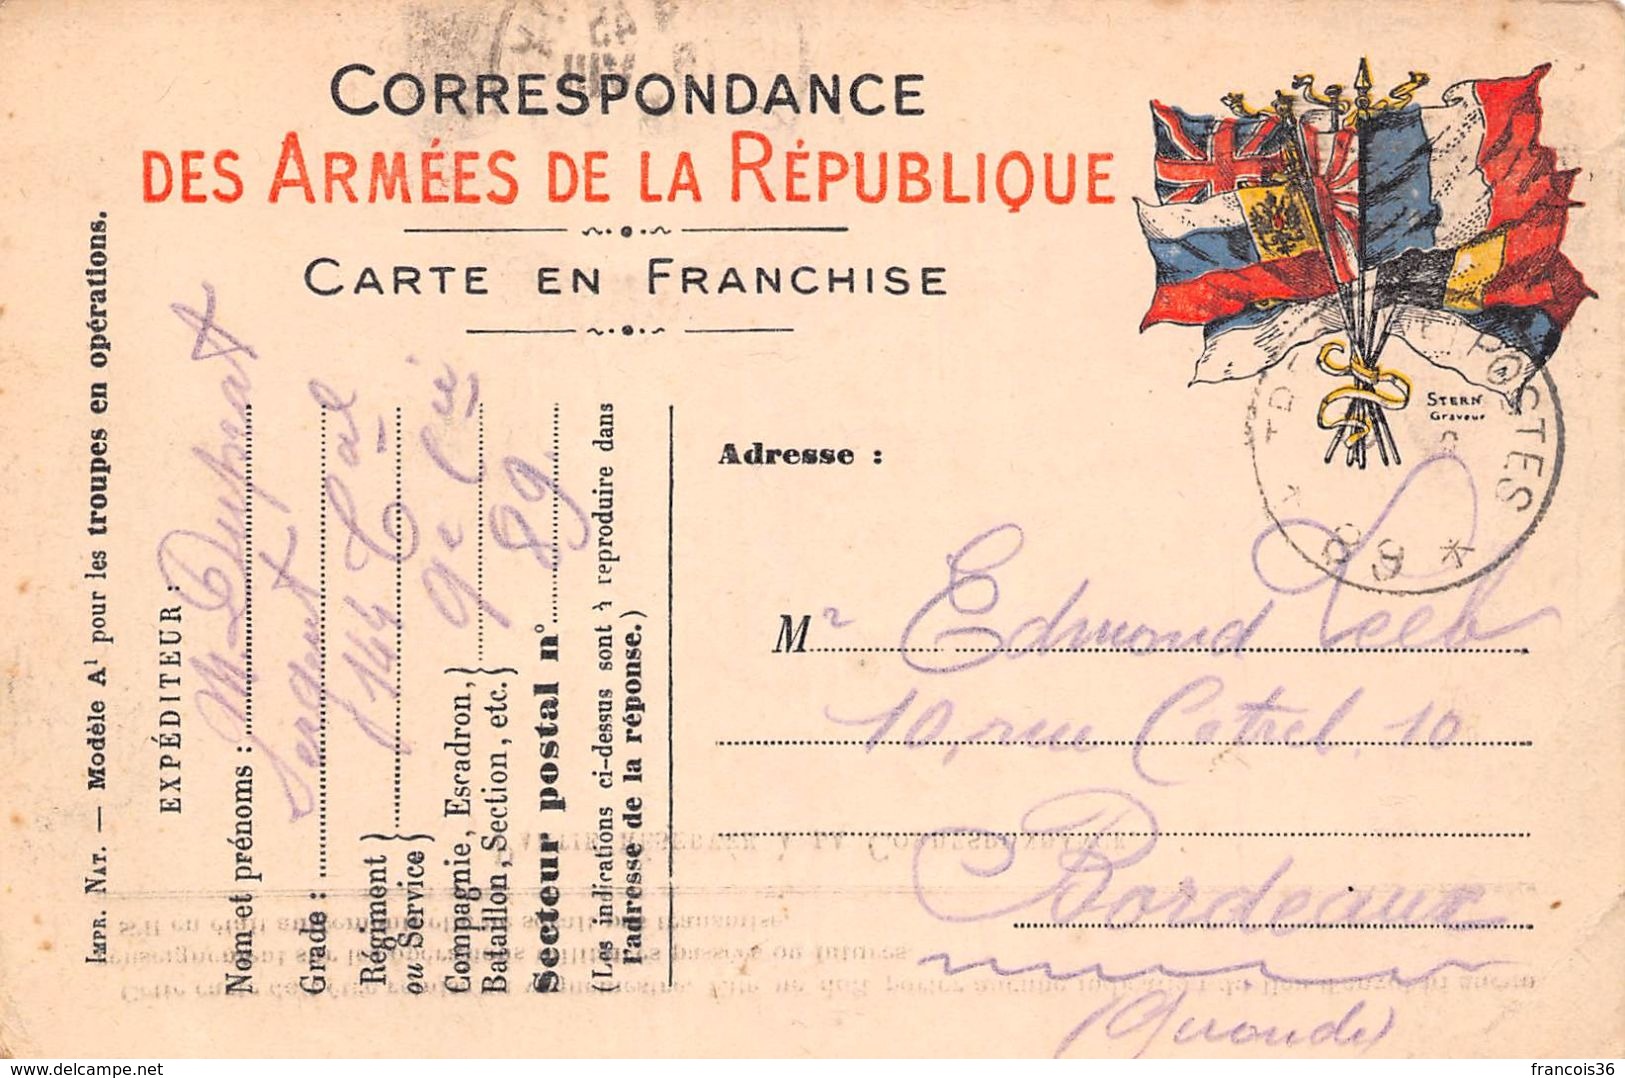 Lot de 83 CPA en franchise - Correspondance des Armées de la République - témoignages de guerre 1914 1918